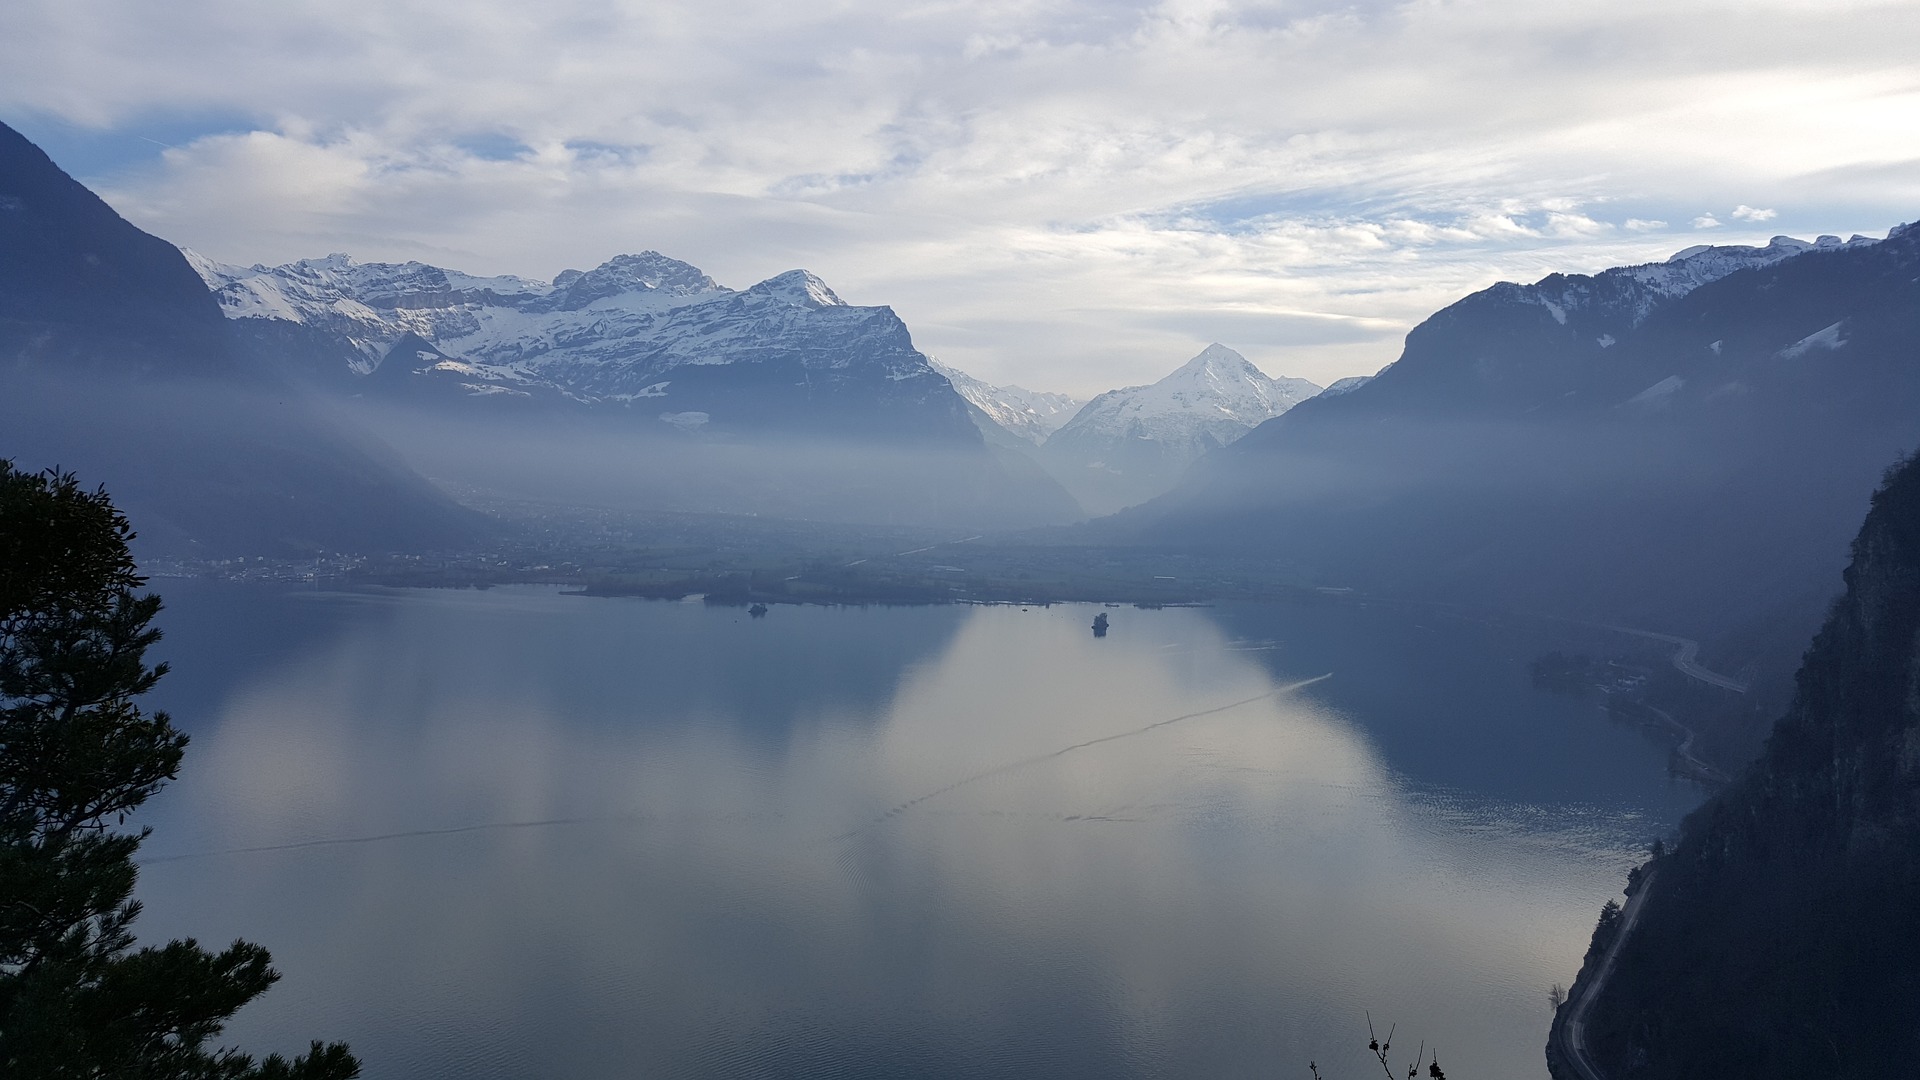 Lucerne Lake in Switzerland